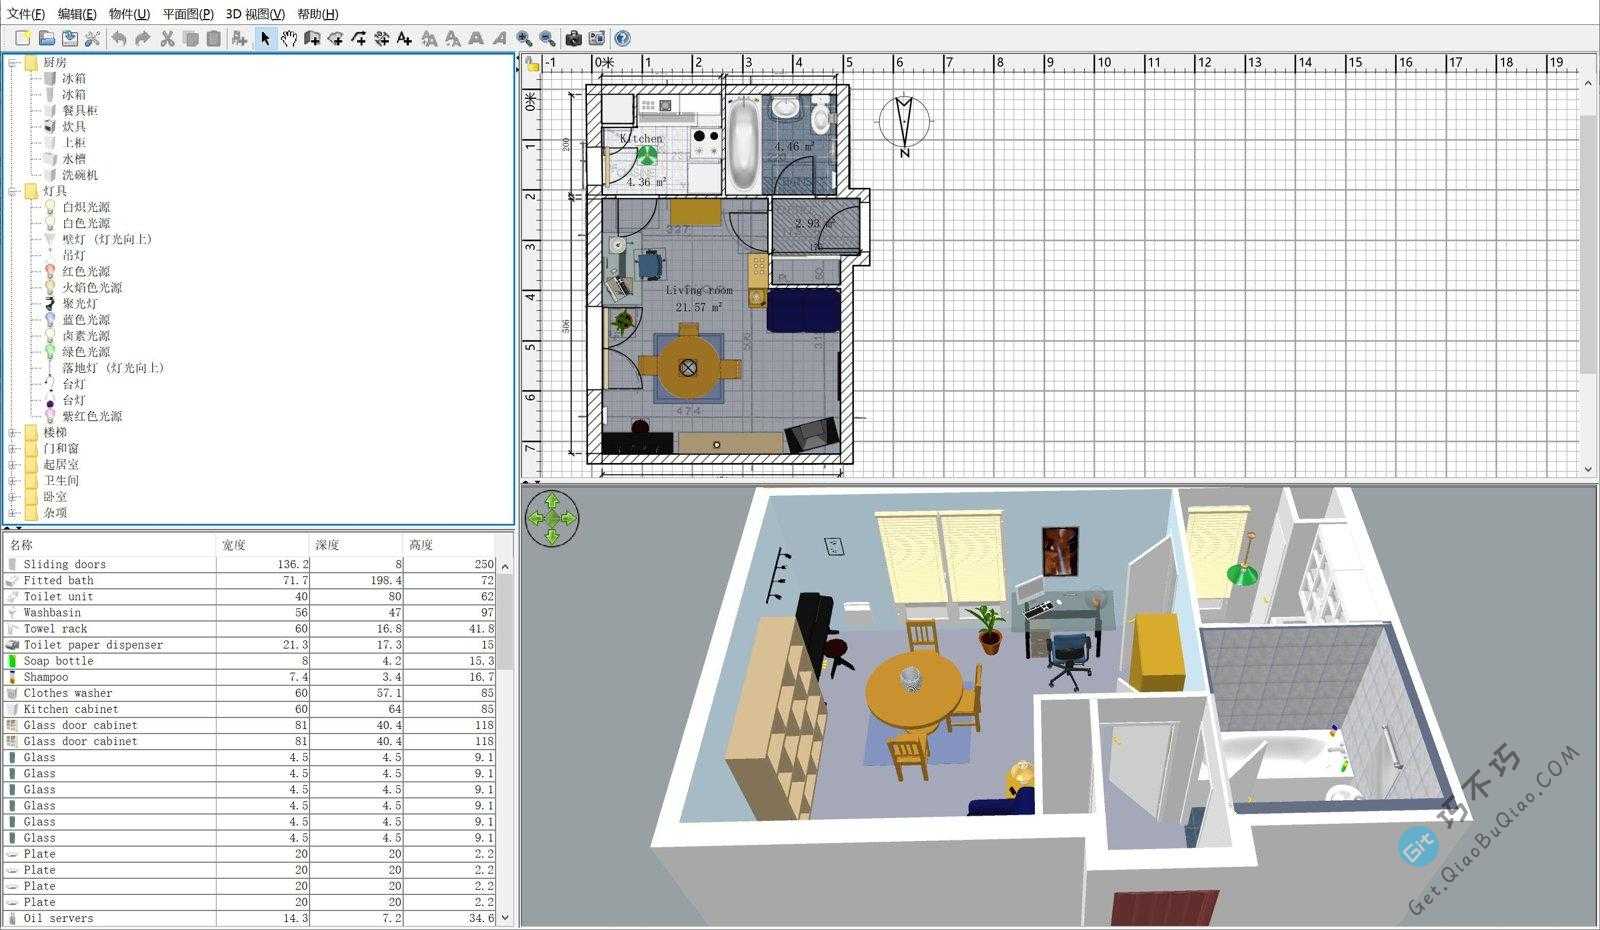 新手也能快速学会用的室内家装格局3D效果设计软件，跟我一起来制作自家房屋布局吧